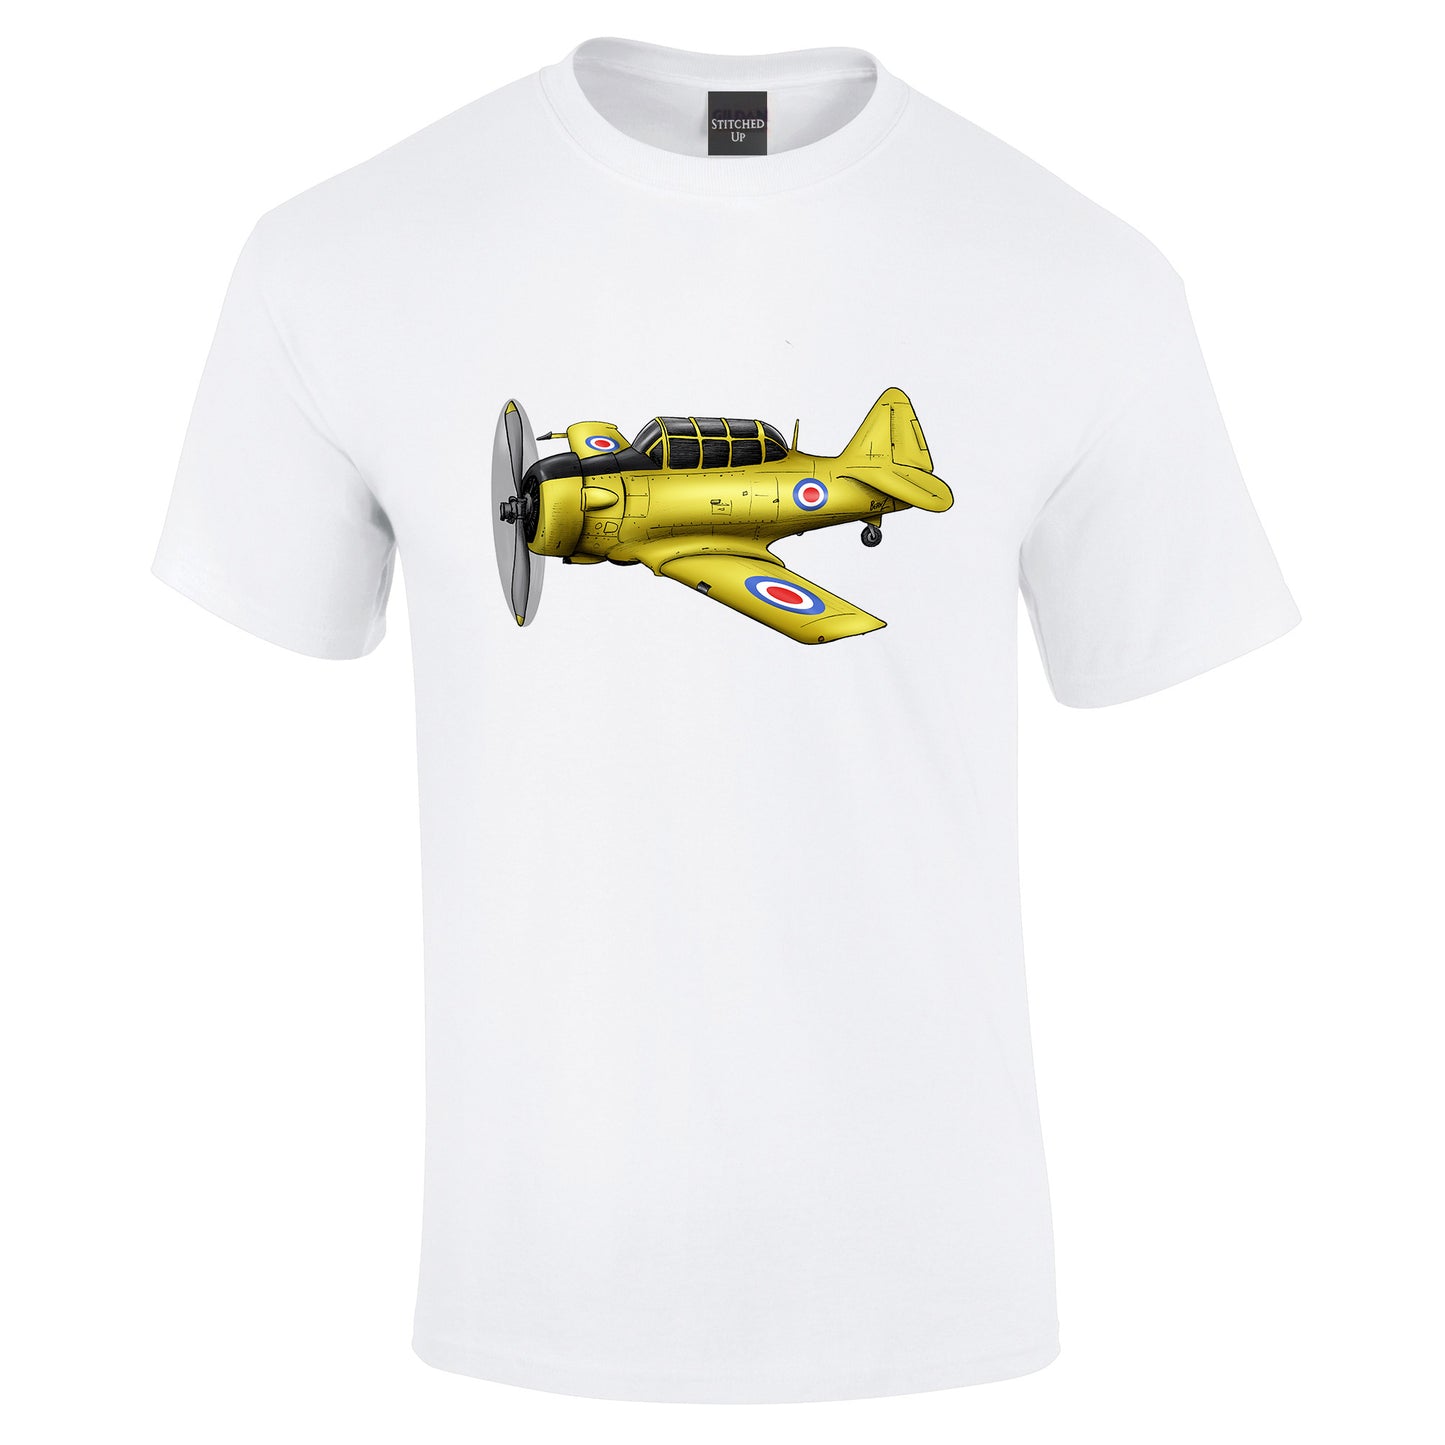 Harvard Aircraft T-Shirt